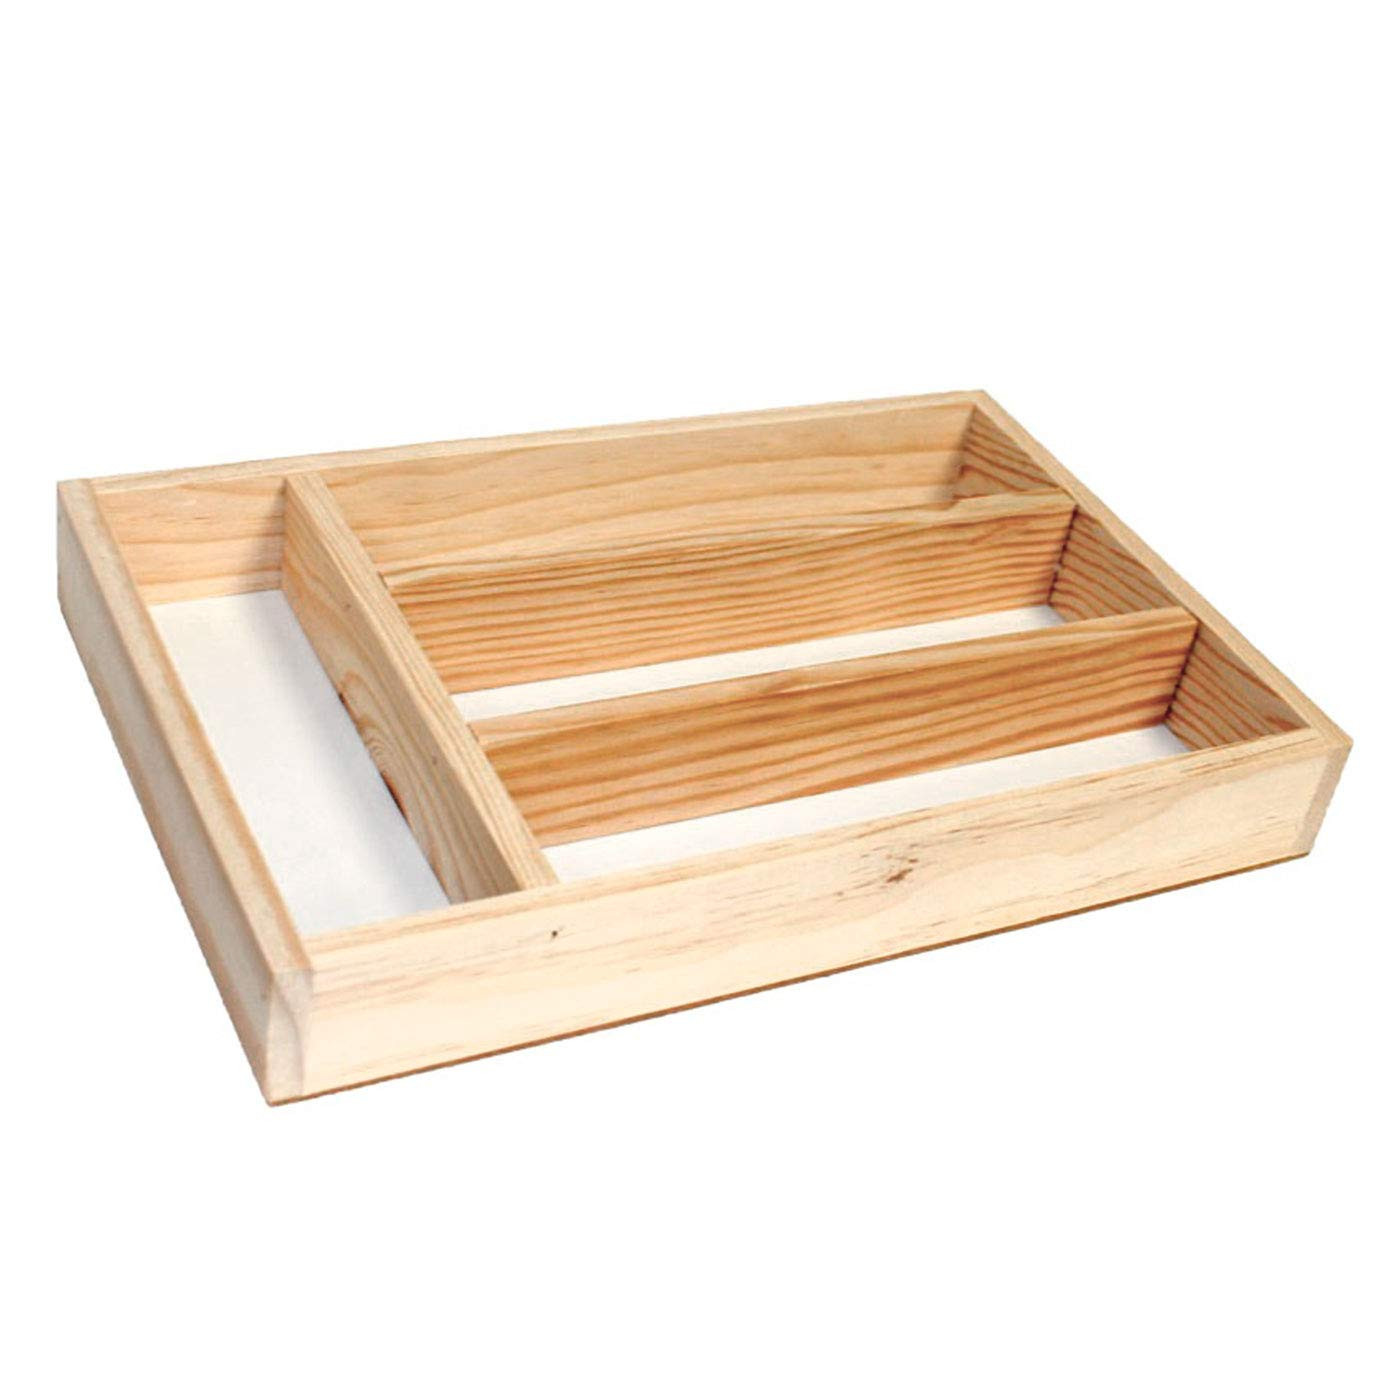 Acan Panera de madera natural con tapa deslizante persiana 48 x 26 x 16,5  cm. Contenedor recipiente para almacenar pan : .es: Hogar y cocina